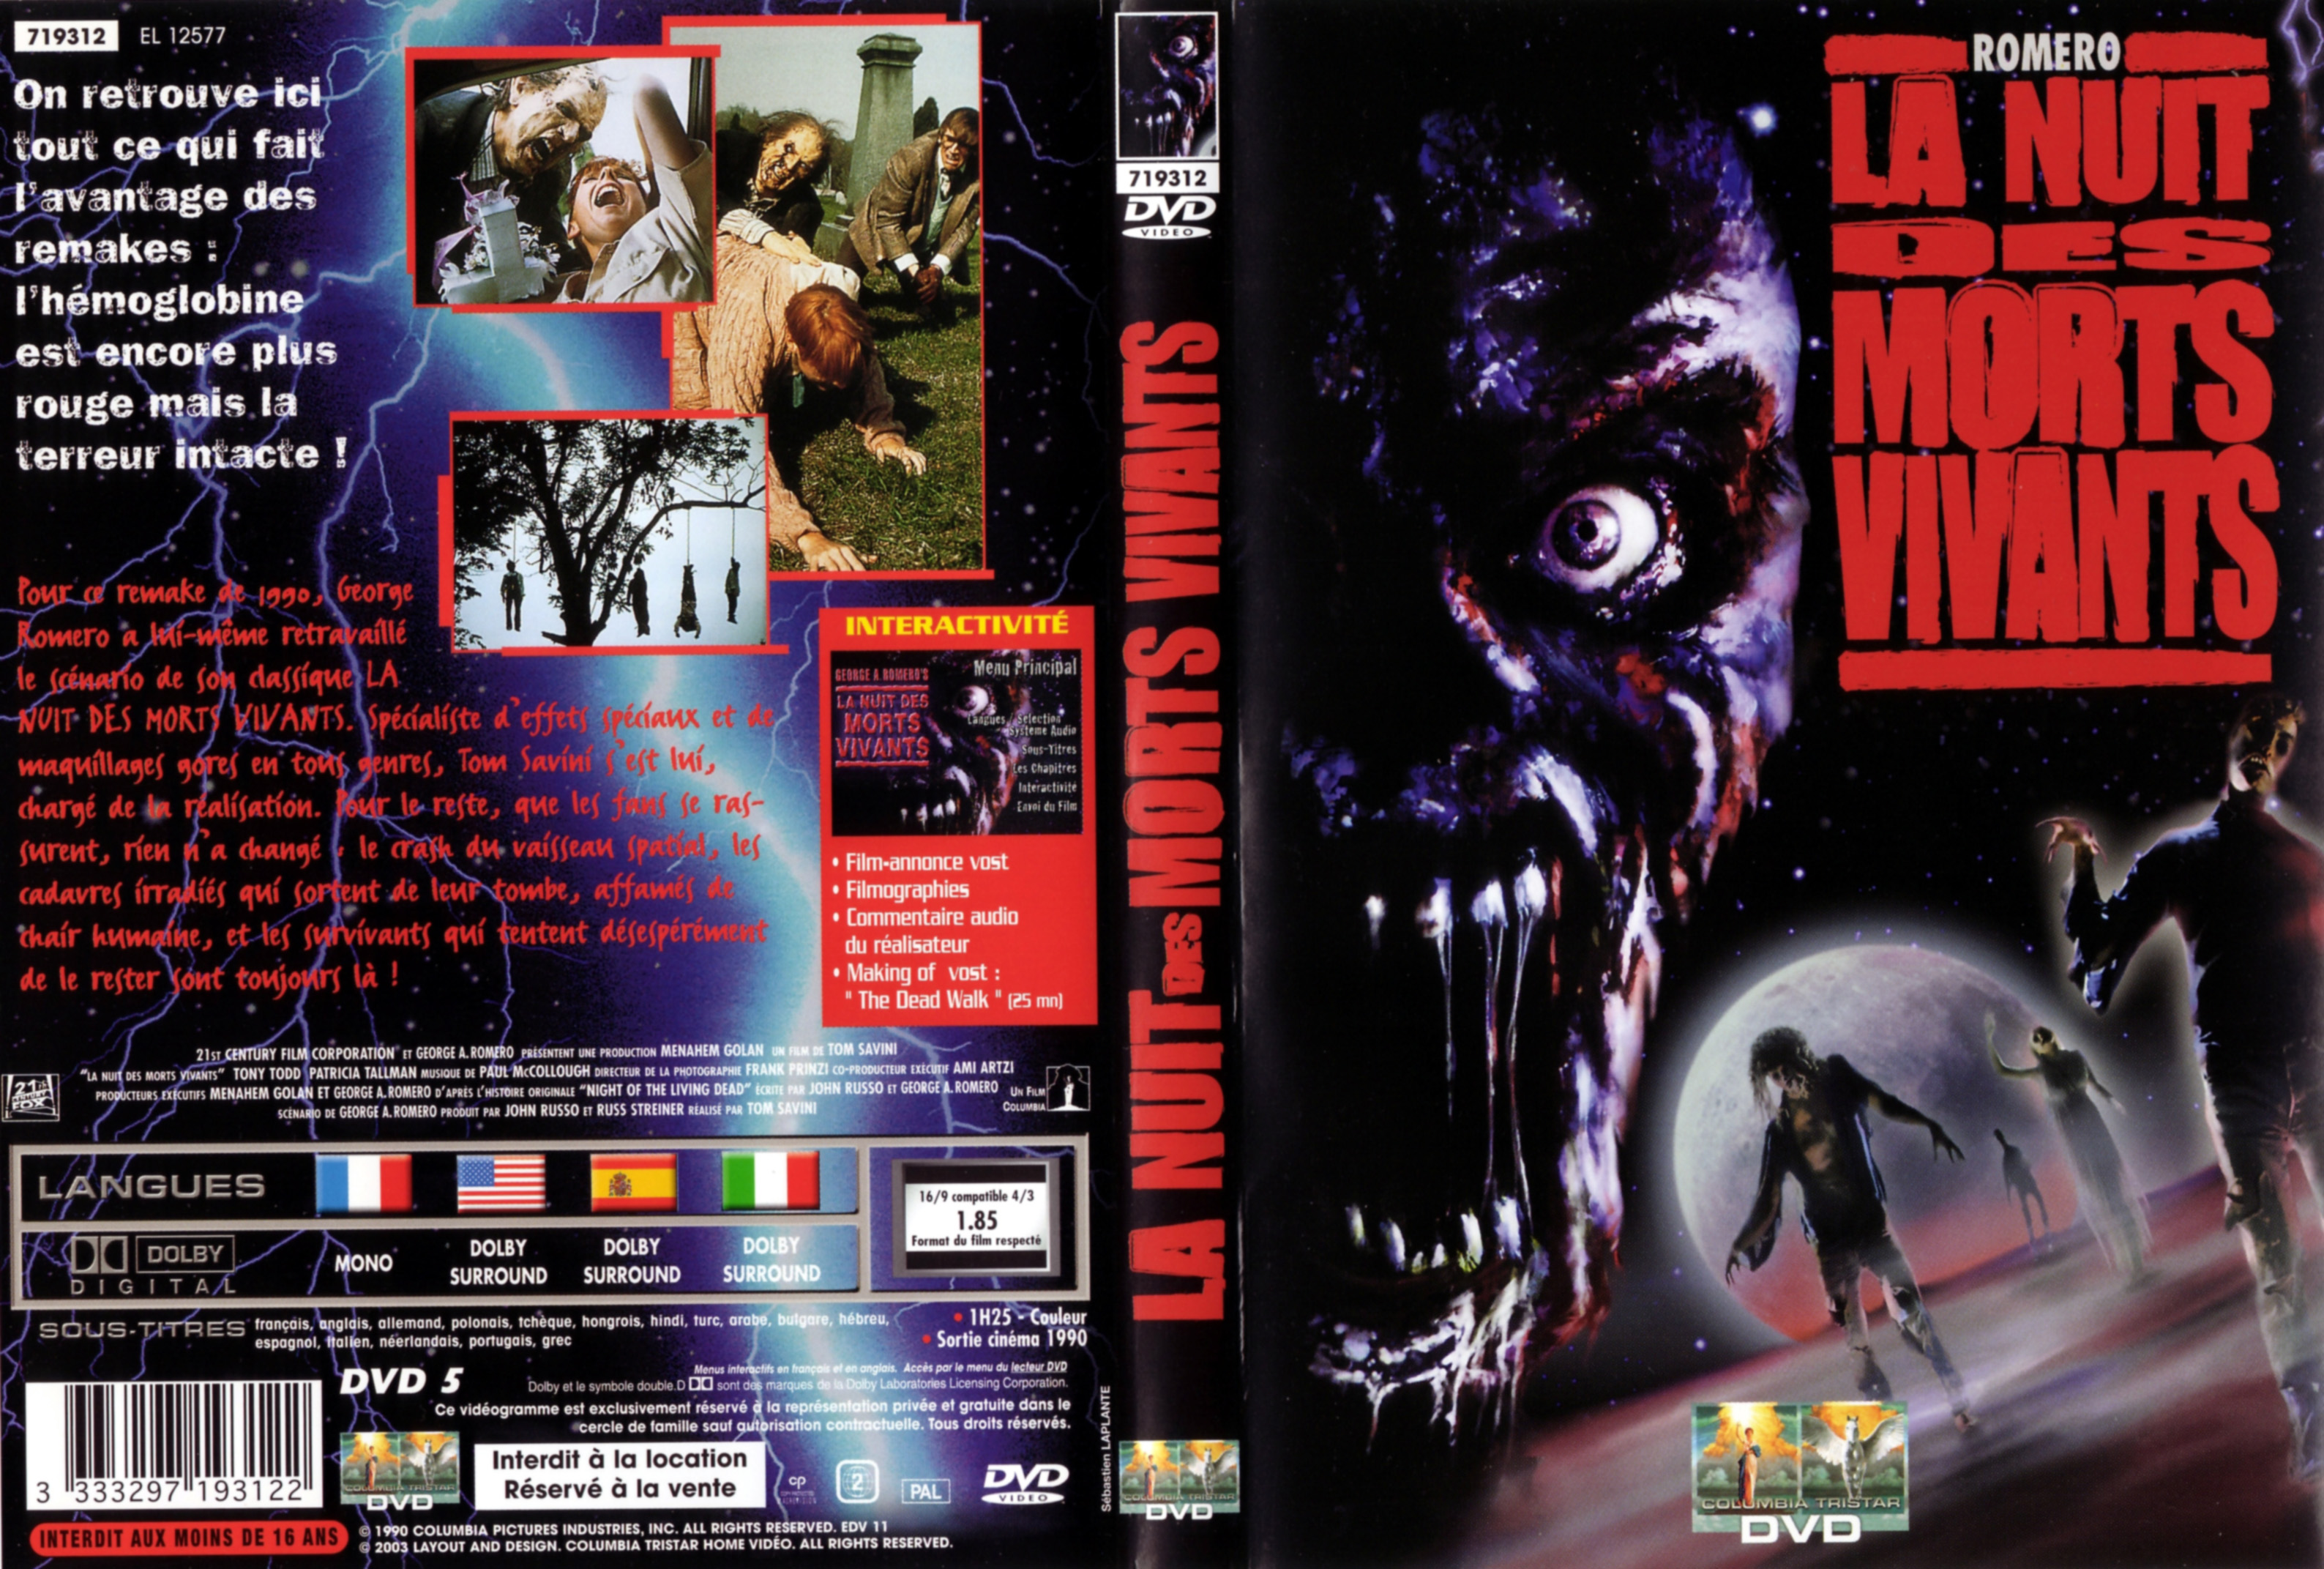 Jaquette DVD La nuit des morts vivants (1990) v2